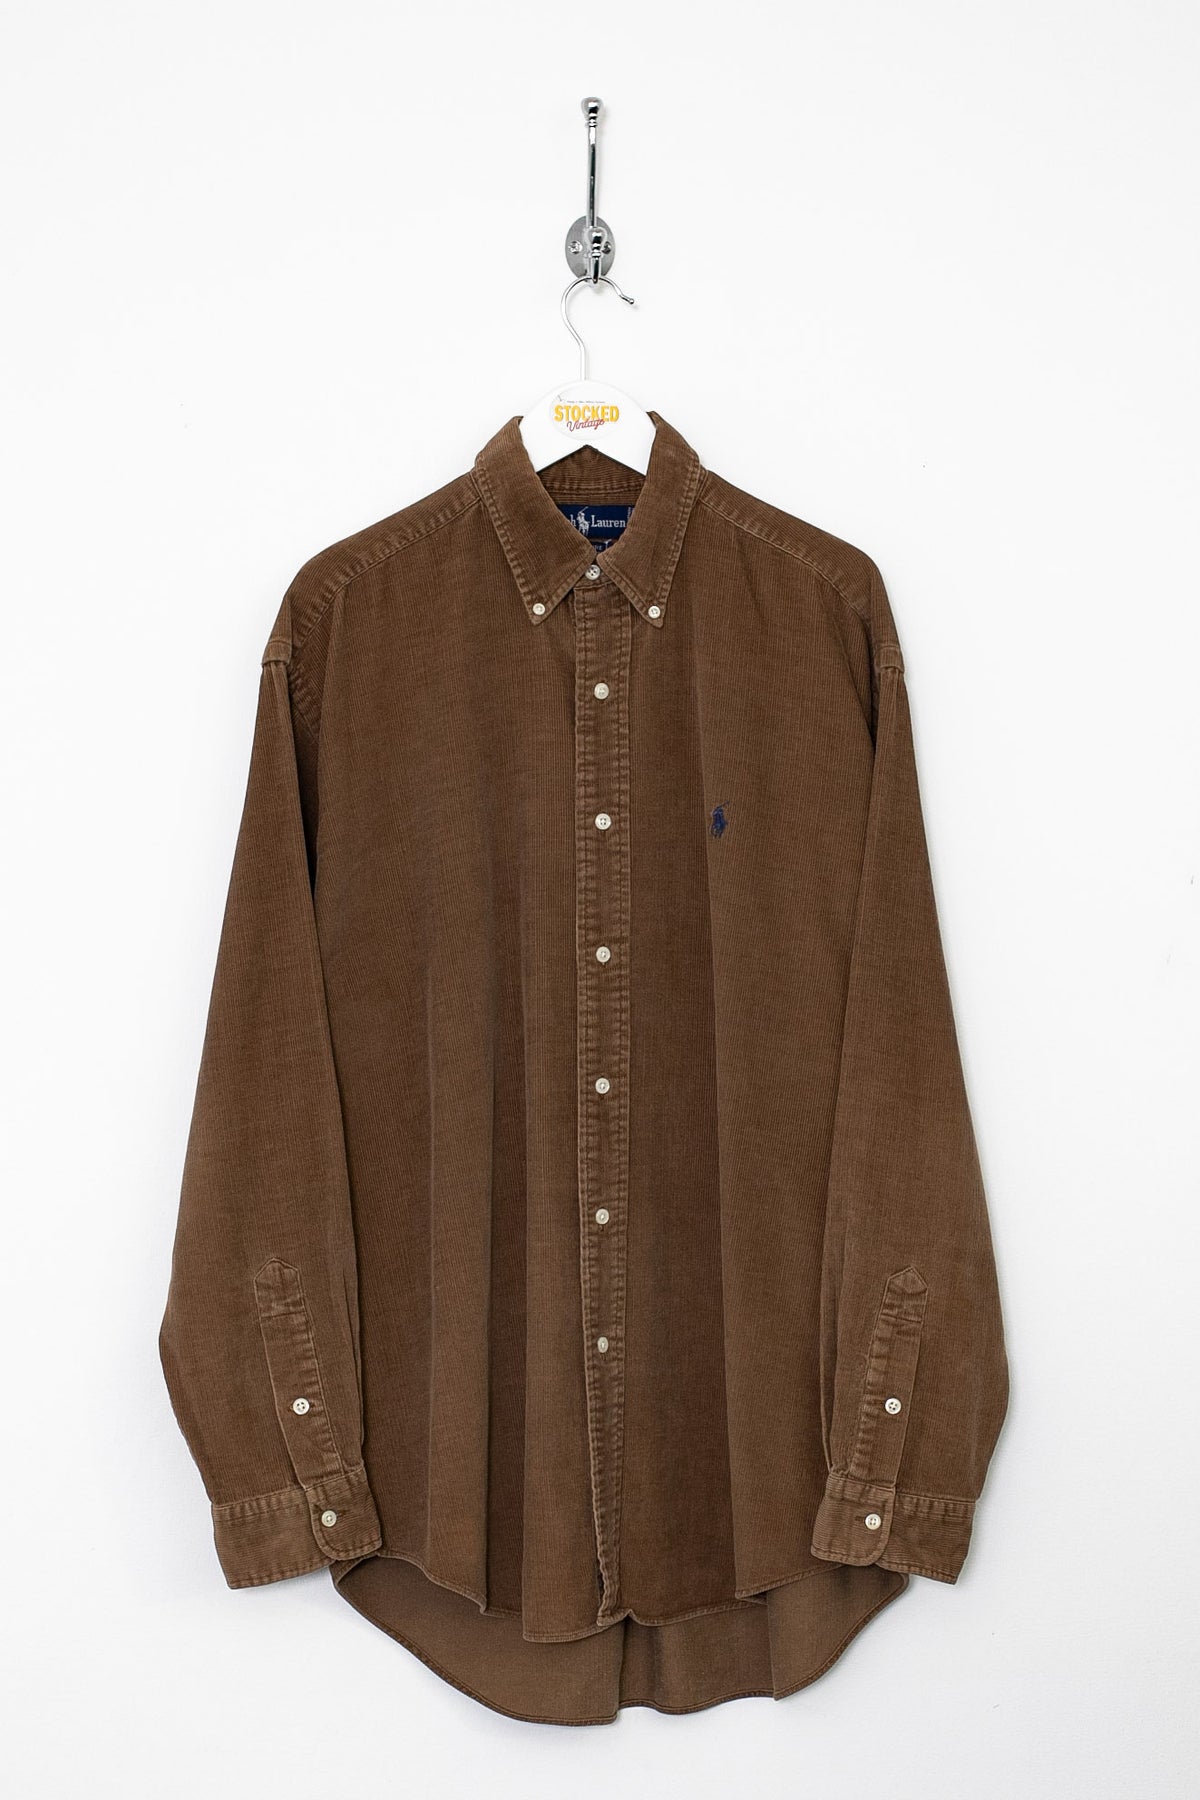 90s Ralph Lauren Corduroy Shirt (L)